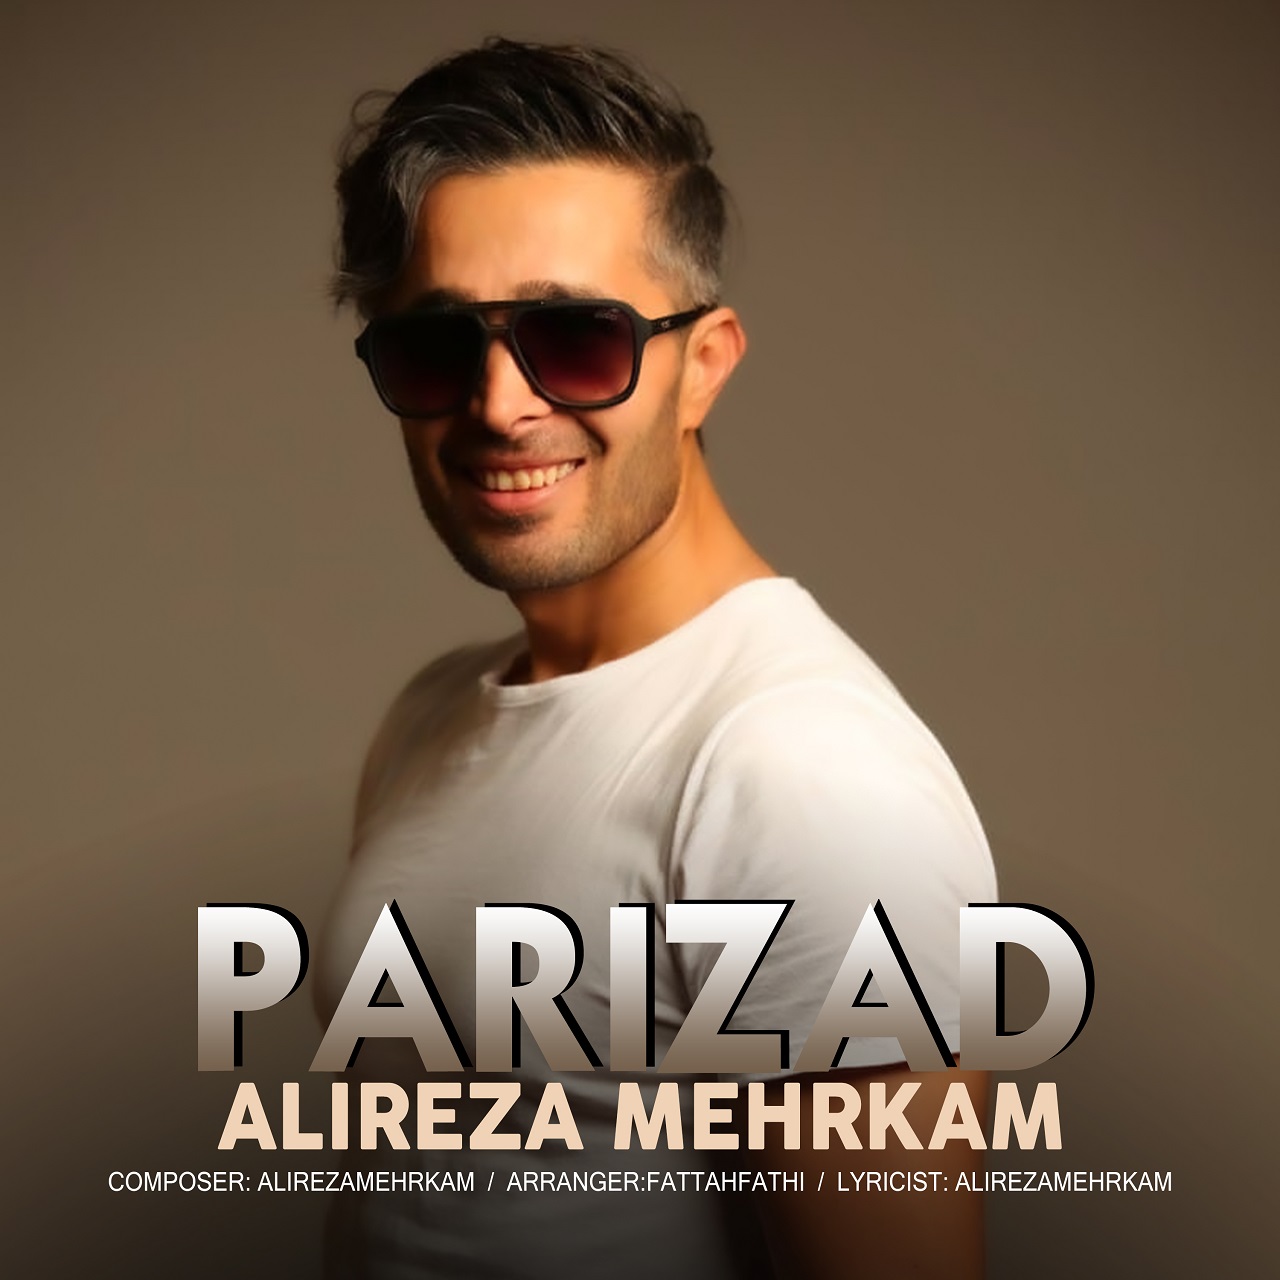  دانلود آهنگ جدید علیرضا مهرکام - پریزاد | Download New Music By Alireza Mehrkam - Parizad